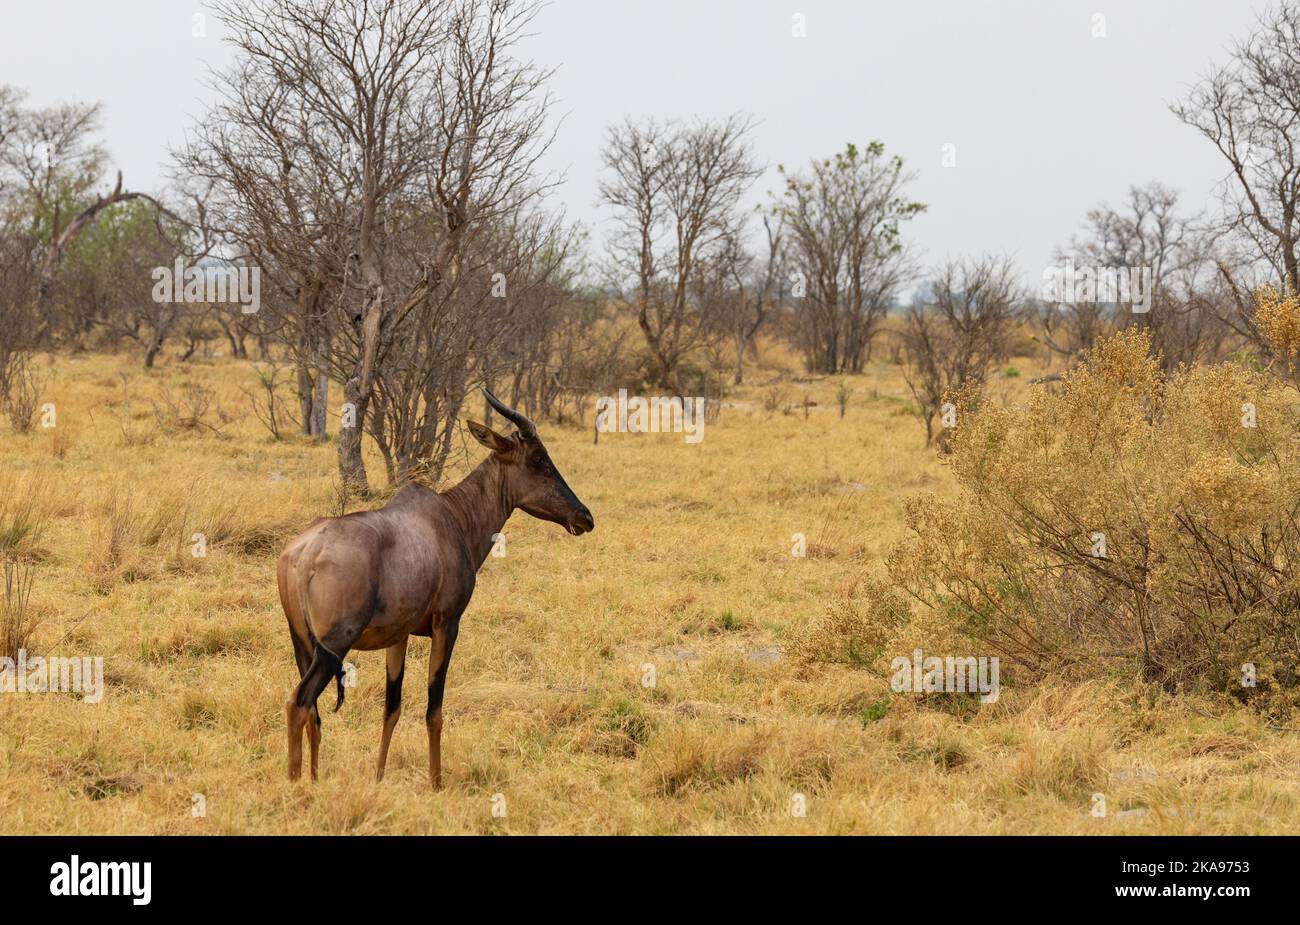 Une Tsessebe adulte, ou Tsessebe commun, antilope, Damaliscus lunatus lunatus ; réserve de gibier Moremi, Okavango Delta, Botswana Afrique. Animal africain. Banque D'Images